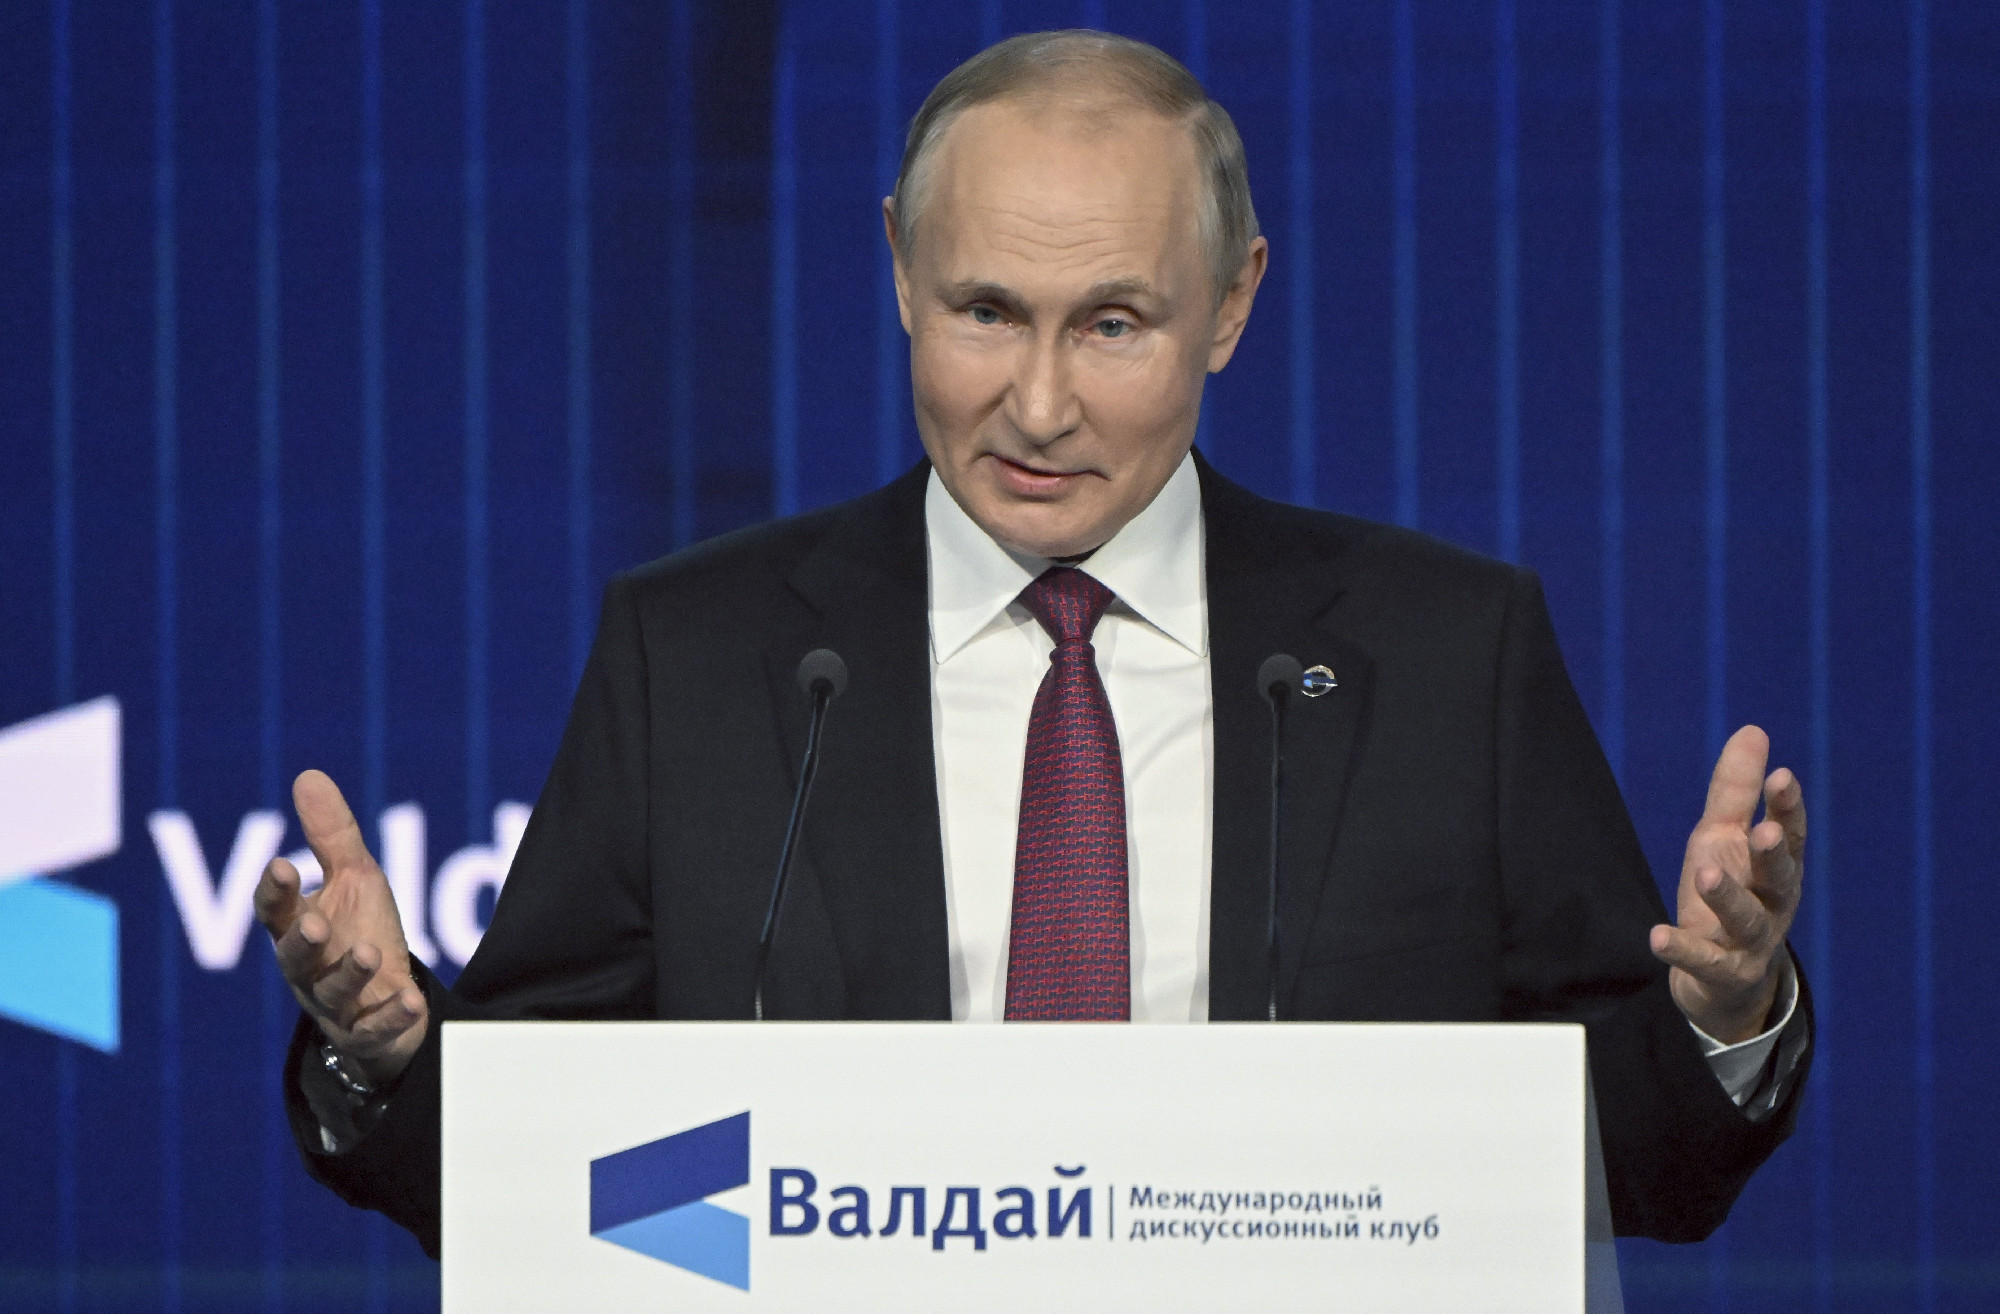 Hét oldalon közölte Putyin beszédét a kormánypárti Demokrata